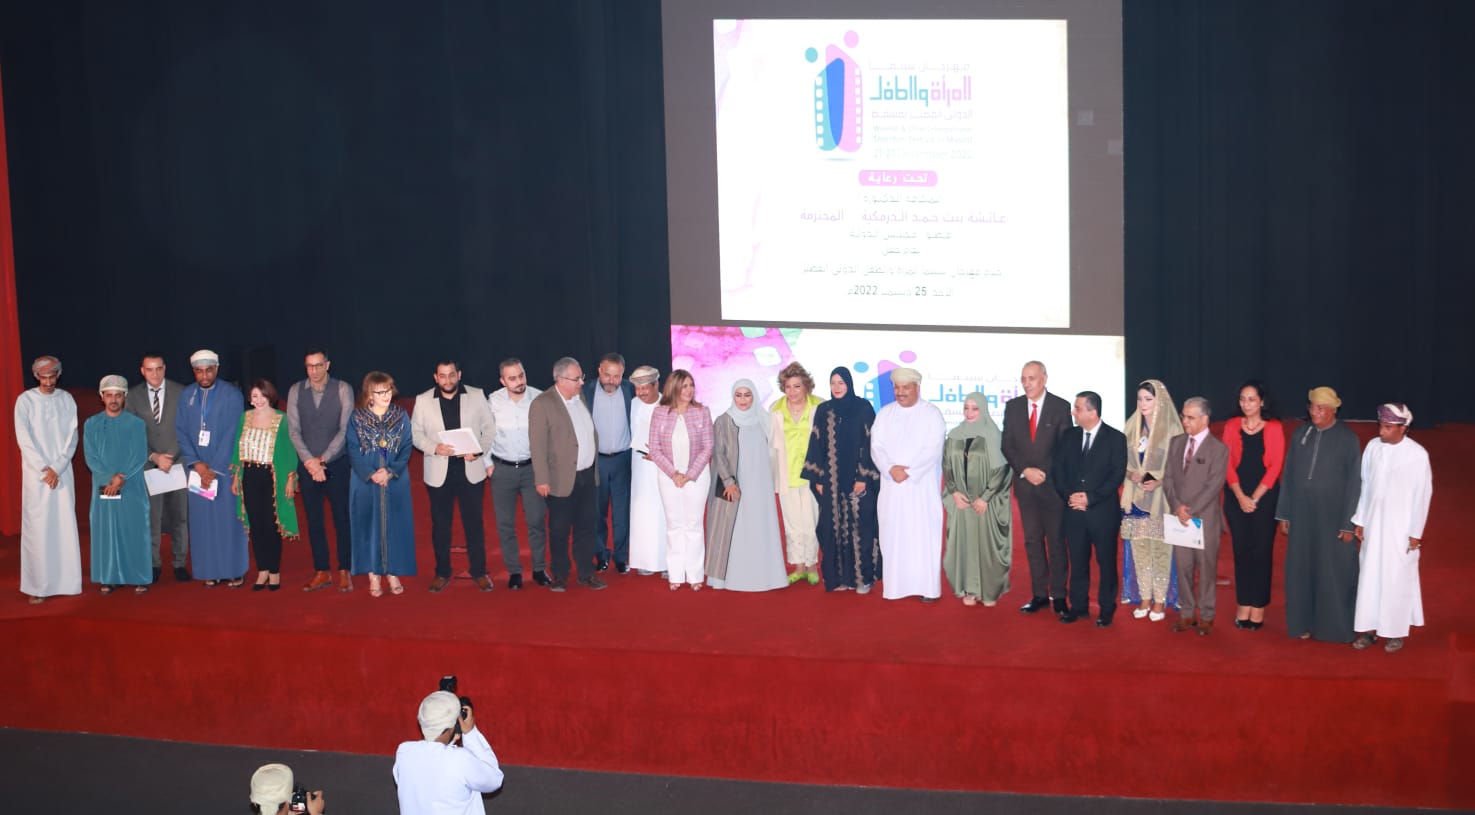 فاز الفيلم المصري (عزيزي وارد) بجائزة أفضل فيلم روائي في مهرجان الفيلم القصير الدولي للمرأة والطفل بمسقط (3).